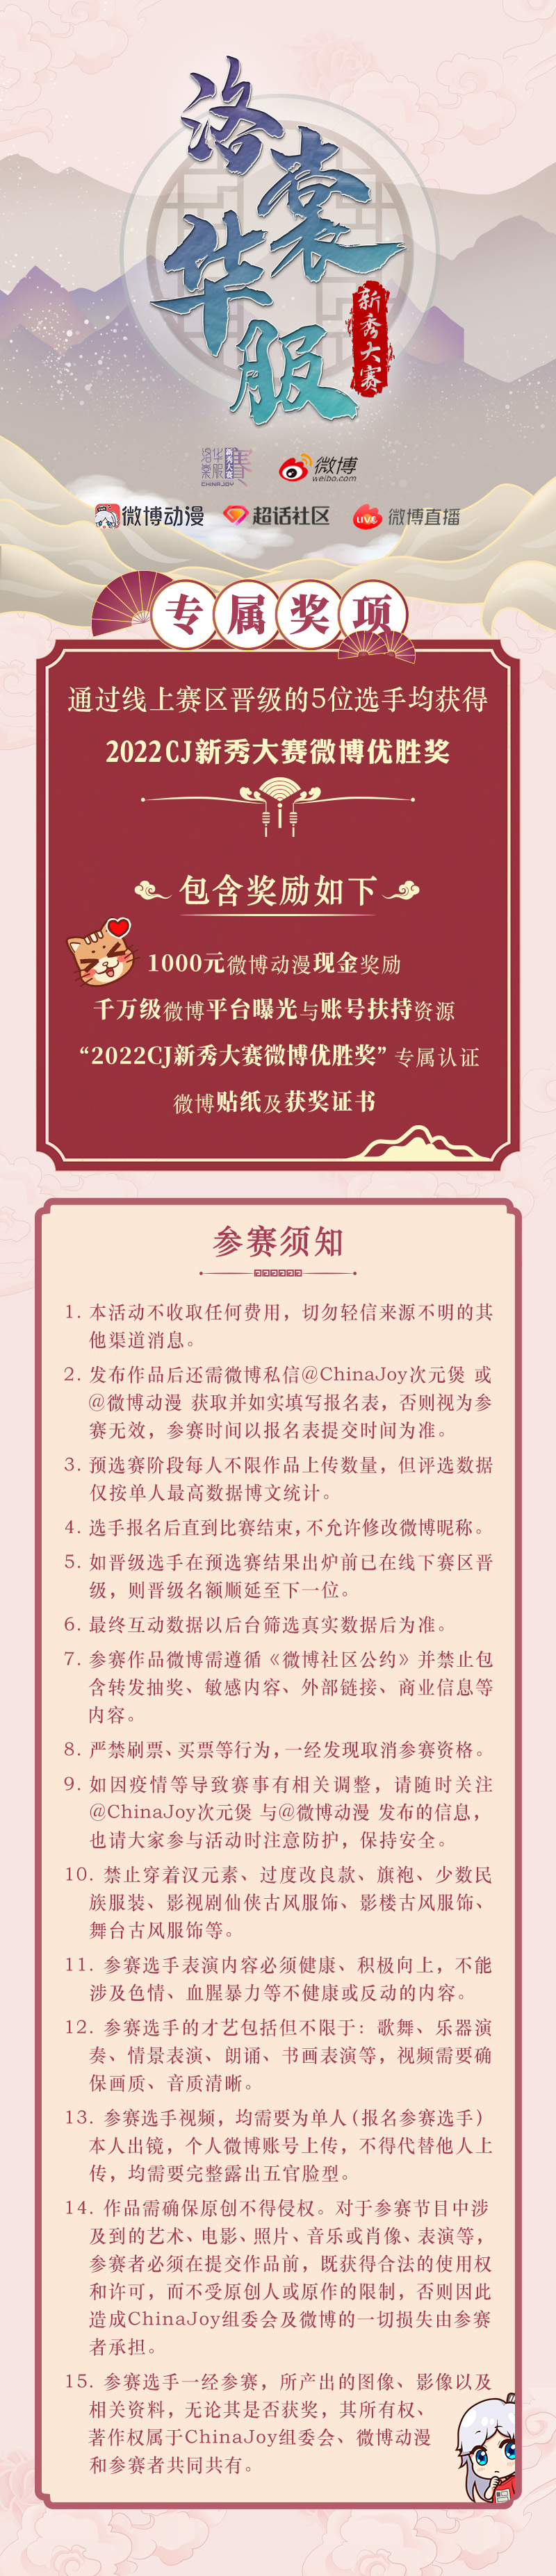 2022年ChinaJoy洛裳华服·新秀大赛 微博线上赛区正式开赛(图2)